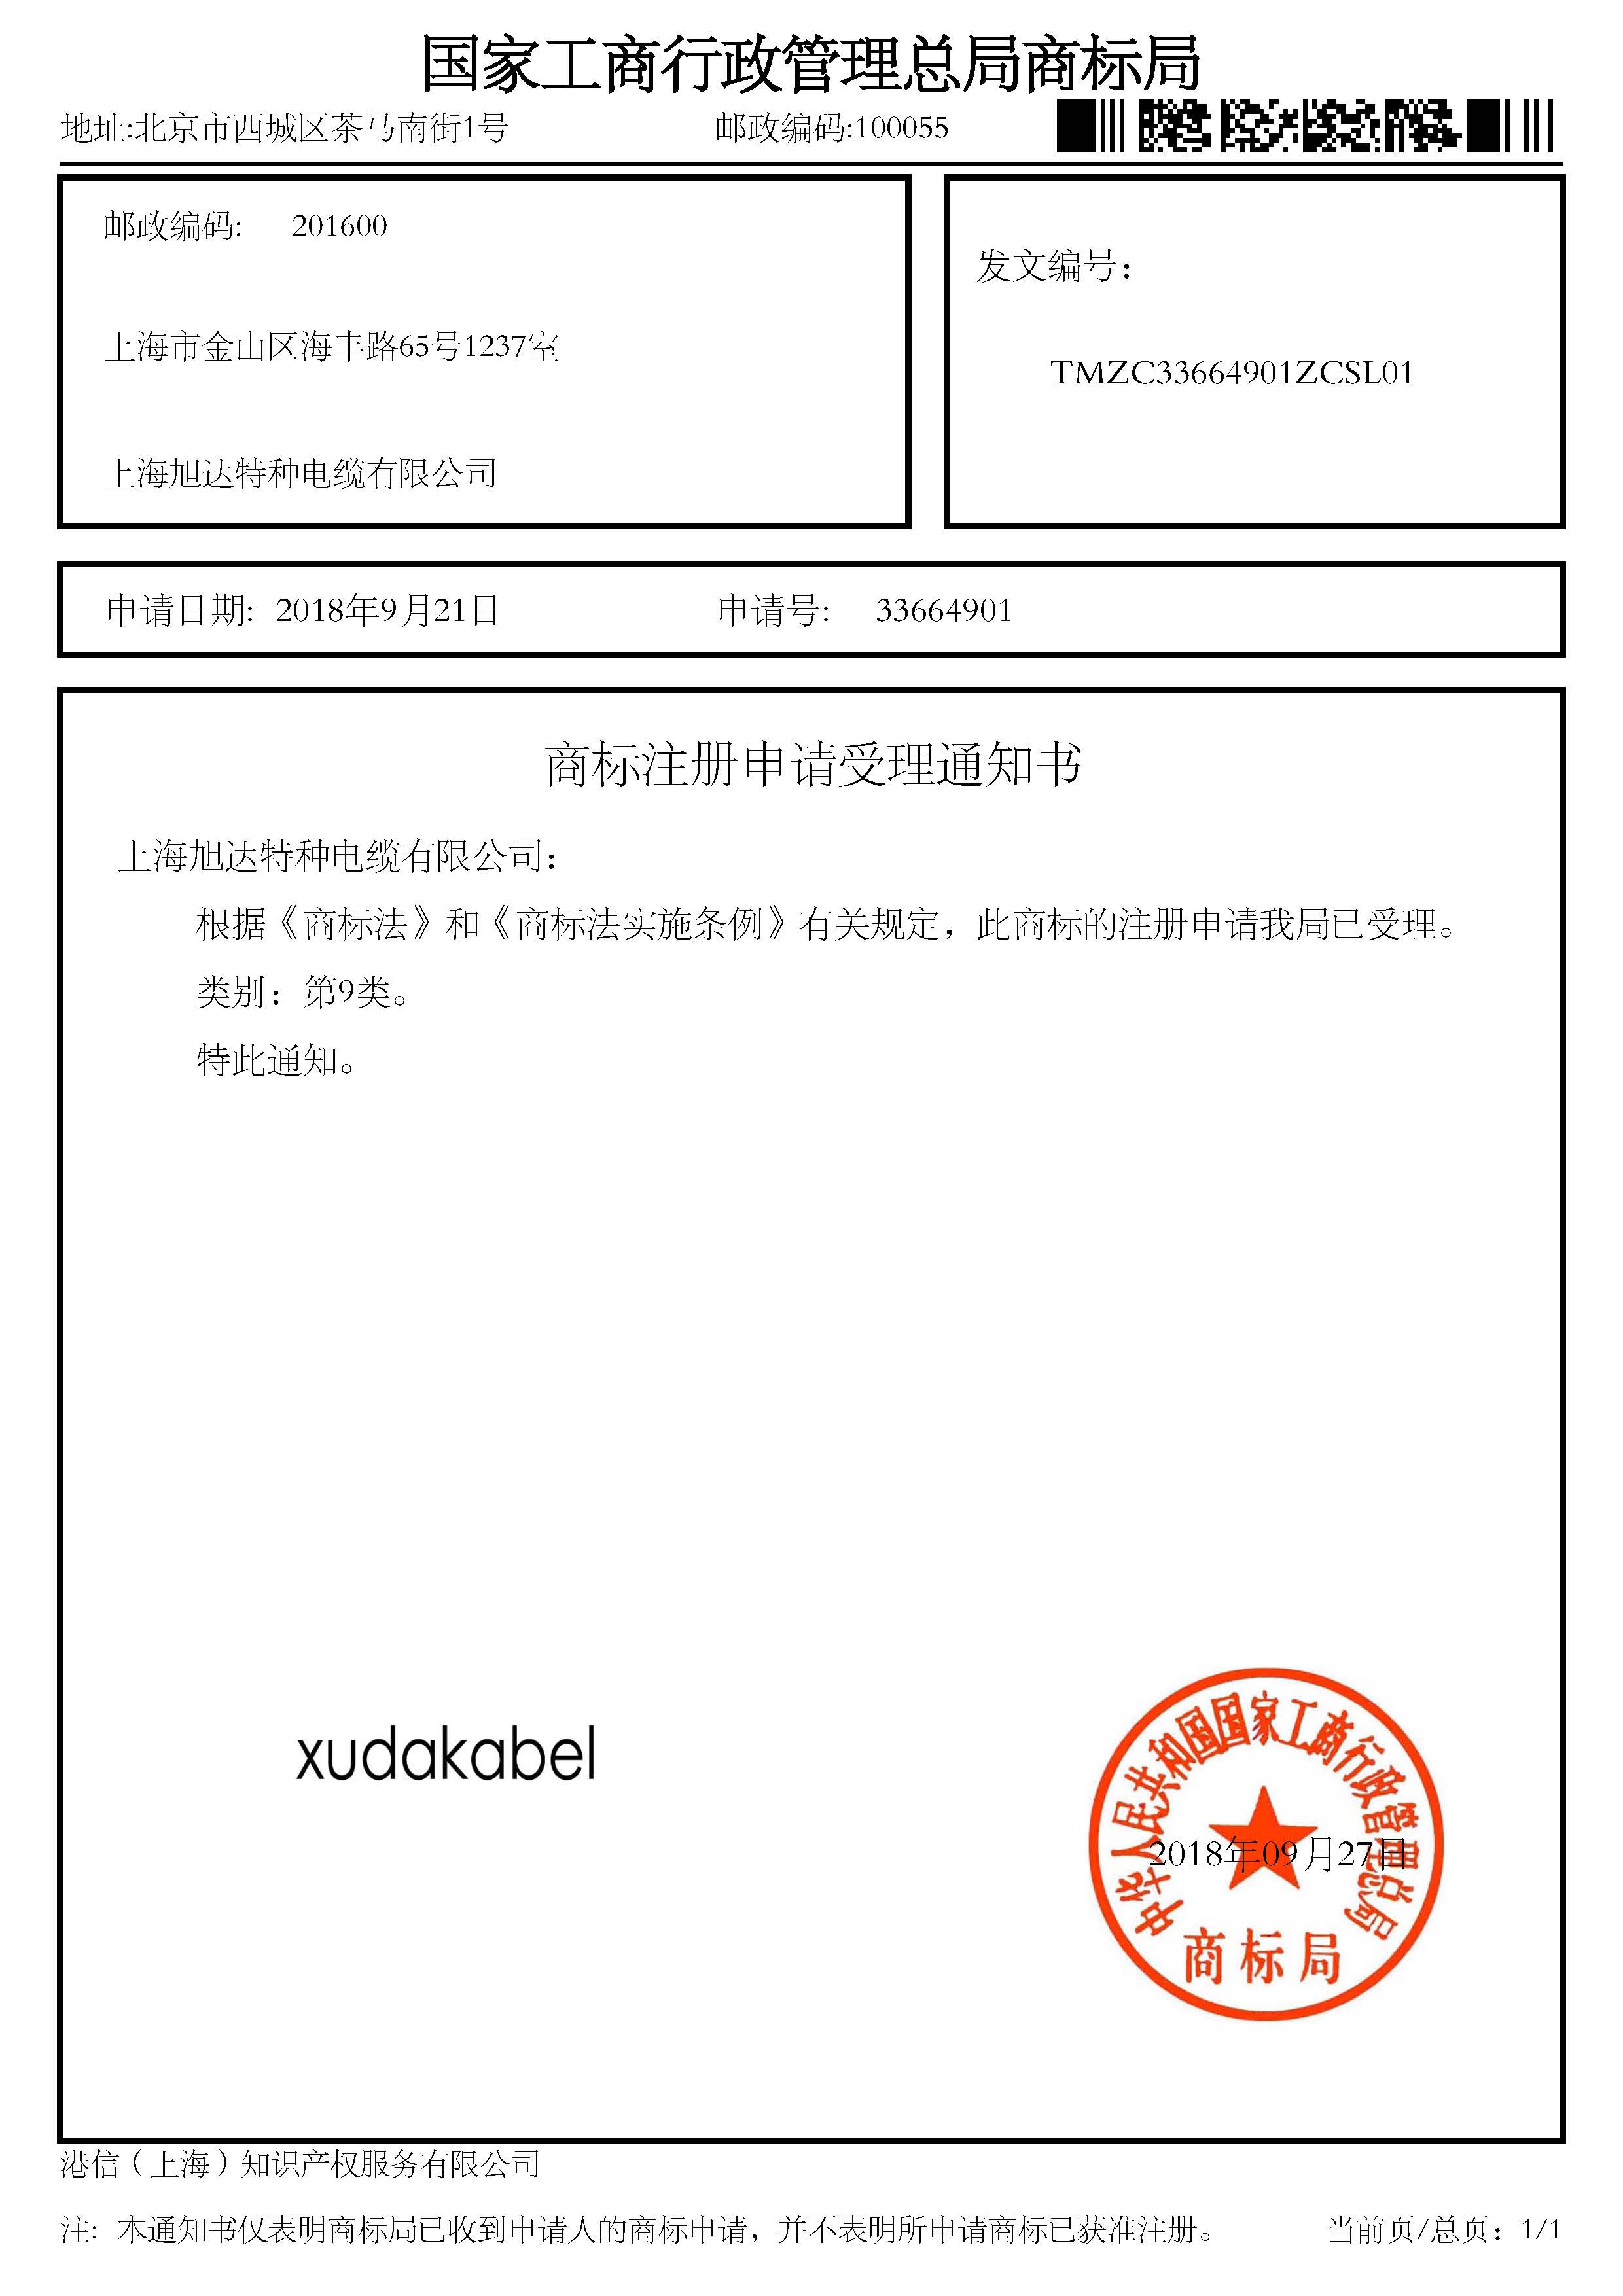 商标注册受理通知书-xudakabel.jpg